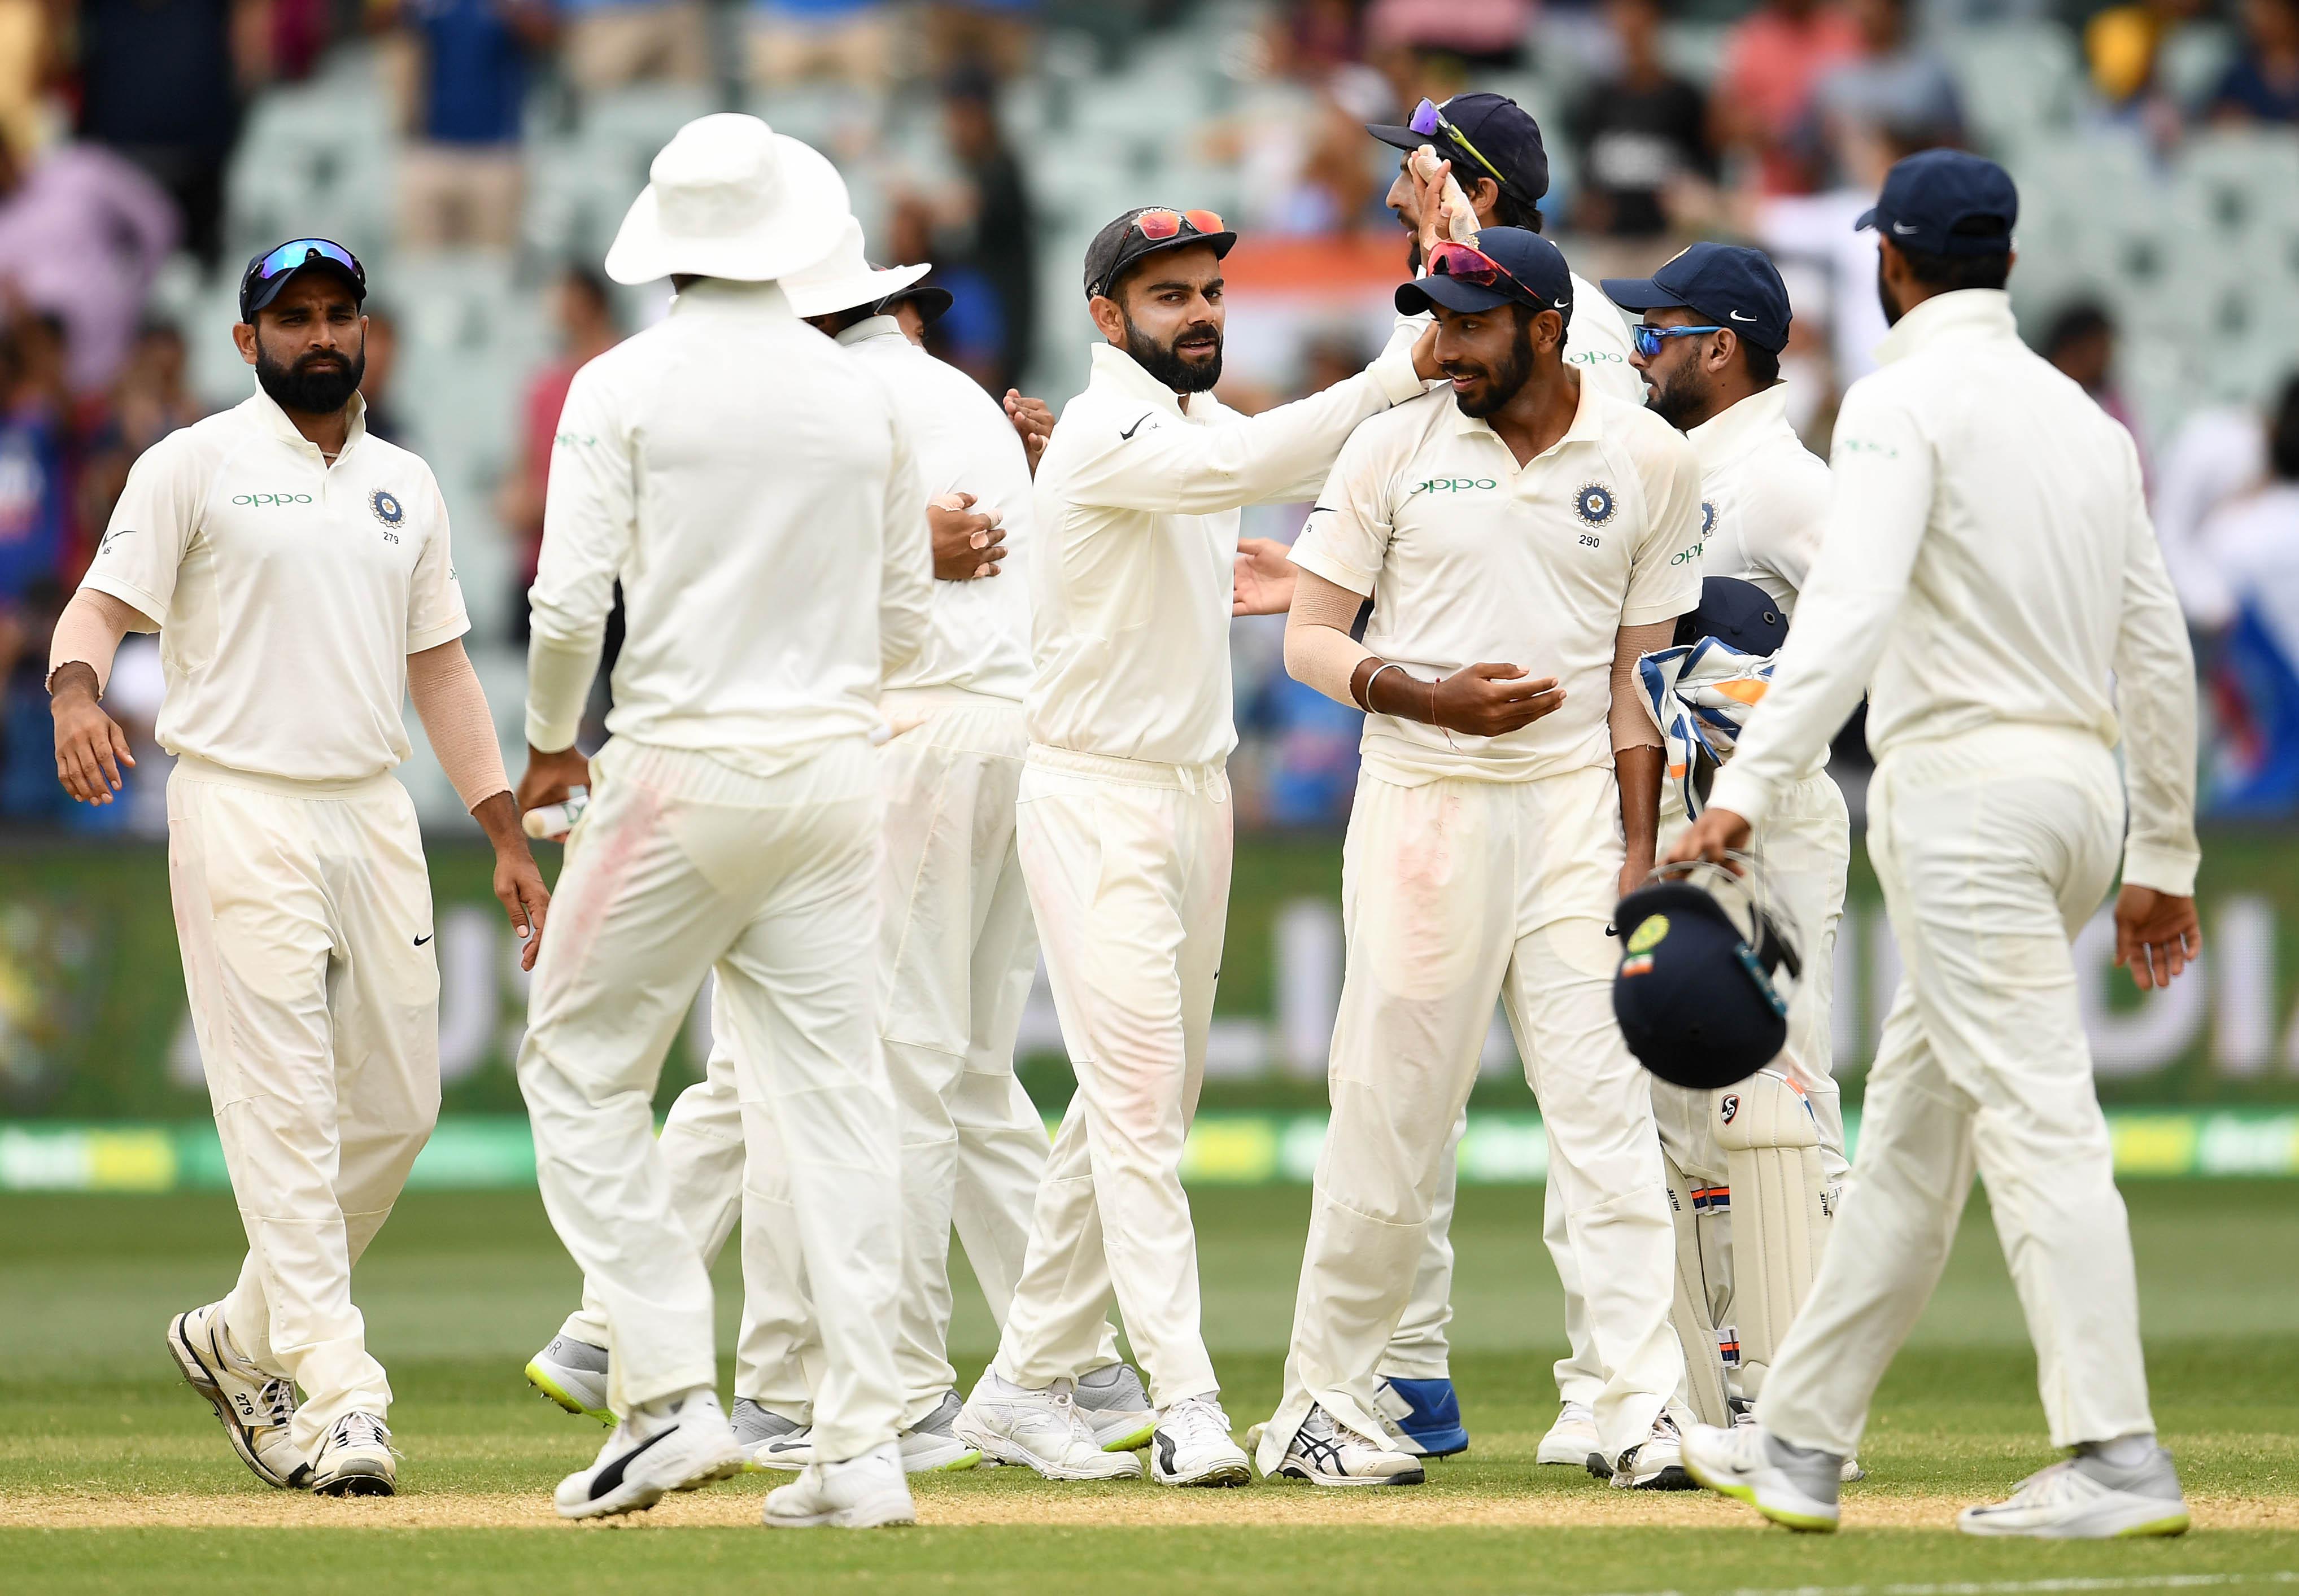 AUSvsIND- भारतीय टीम का ऑस्ट्रेलिया में इस बार सीरीज जीतना तय, नहीं है यकीन तो देख लें ये आंकड़े 3